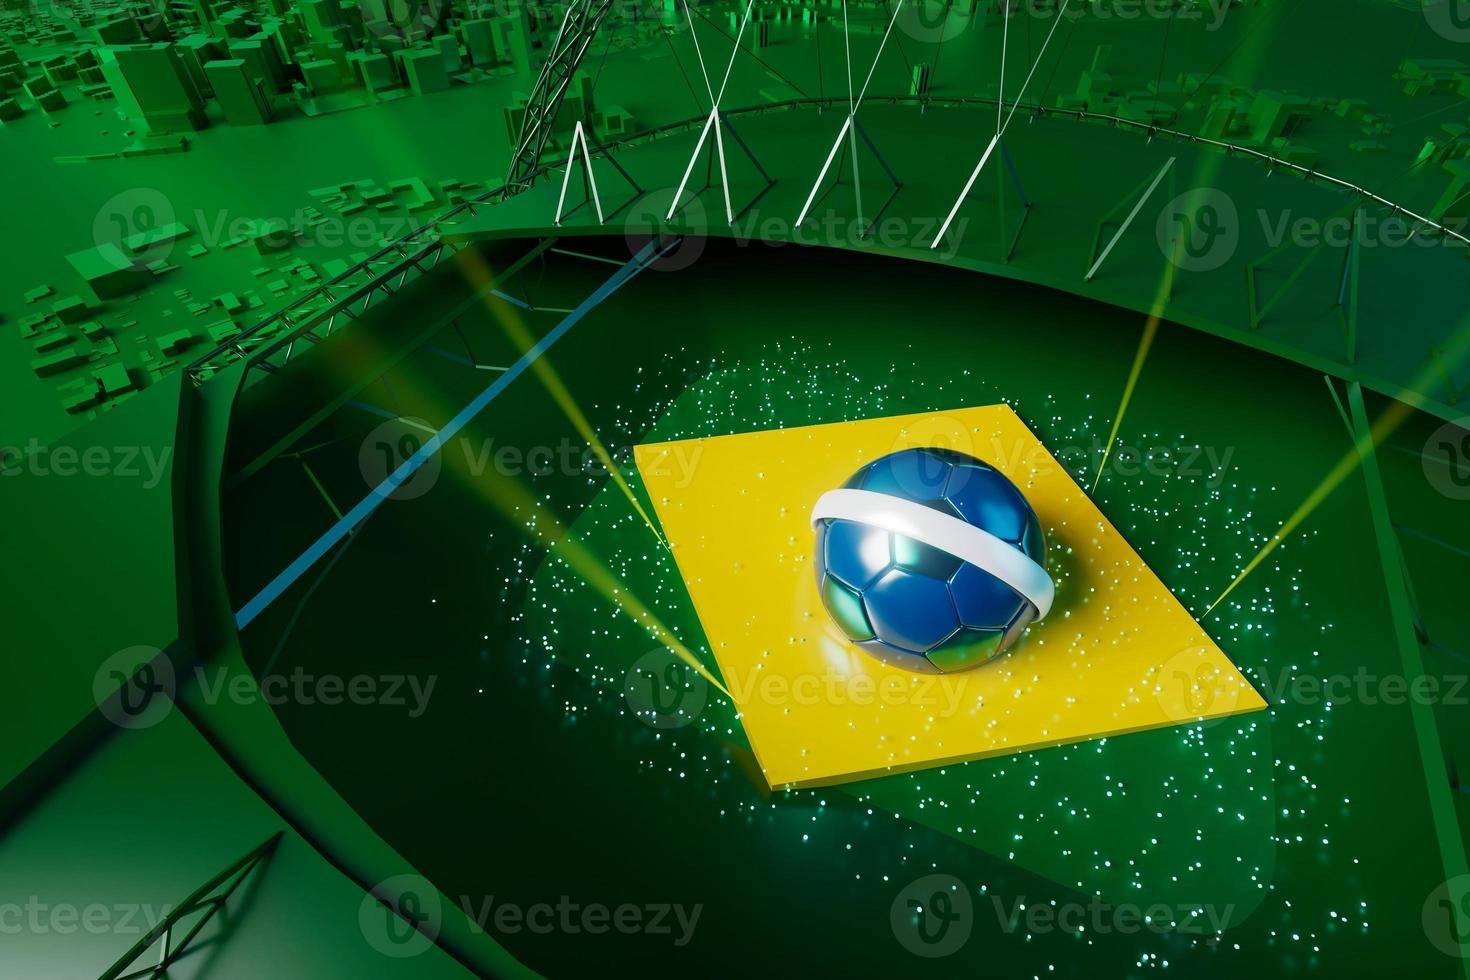 objet de ballons de football, conception de ballon de sport, concept de couleur brésilien d'élément de football, illustration 3d, technologie de football abstraite, smartphone mobile, fond vert, sport en ligne en direct, drapeau brésilien photo